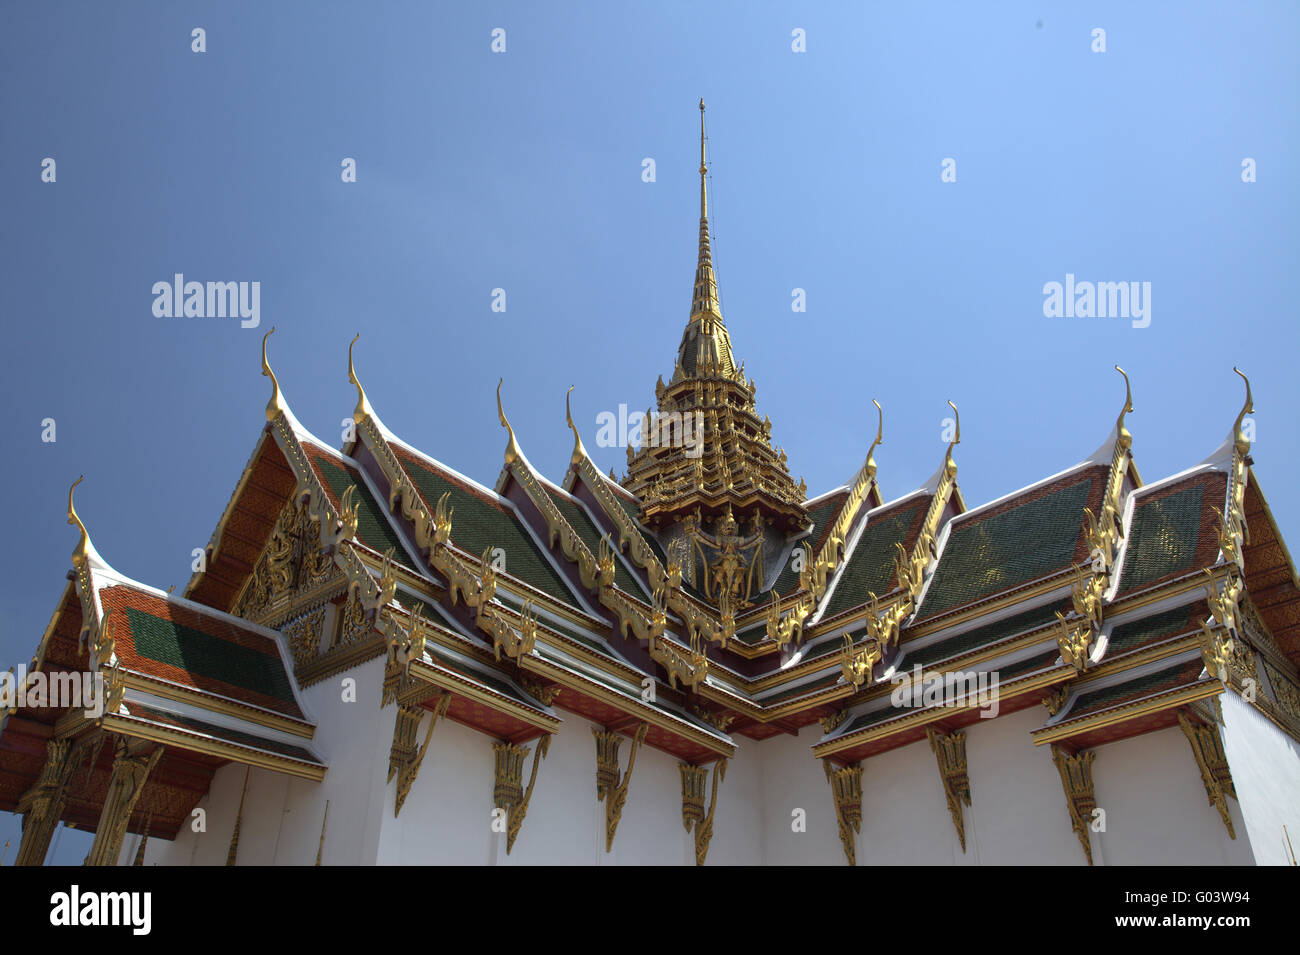 Dach eines Tempels mit Göttern vor blauem Himmel Stockfoto